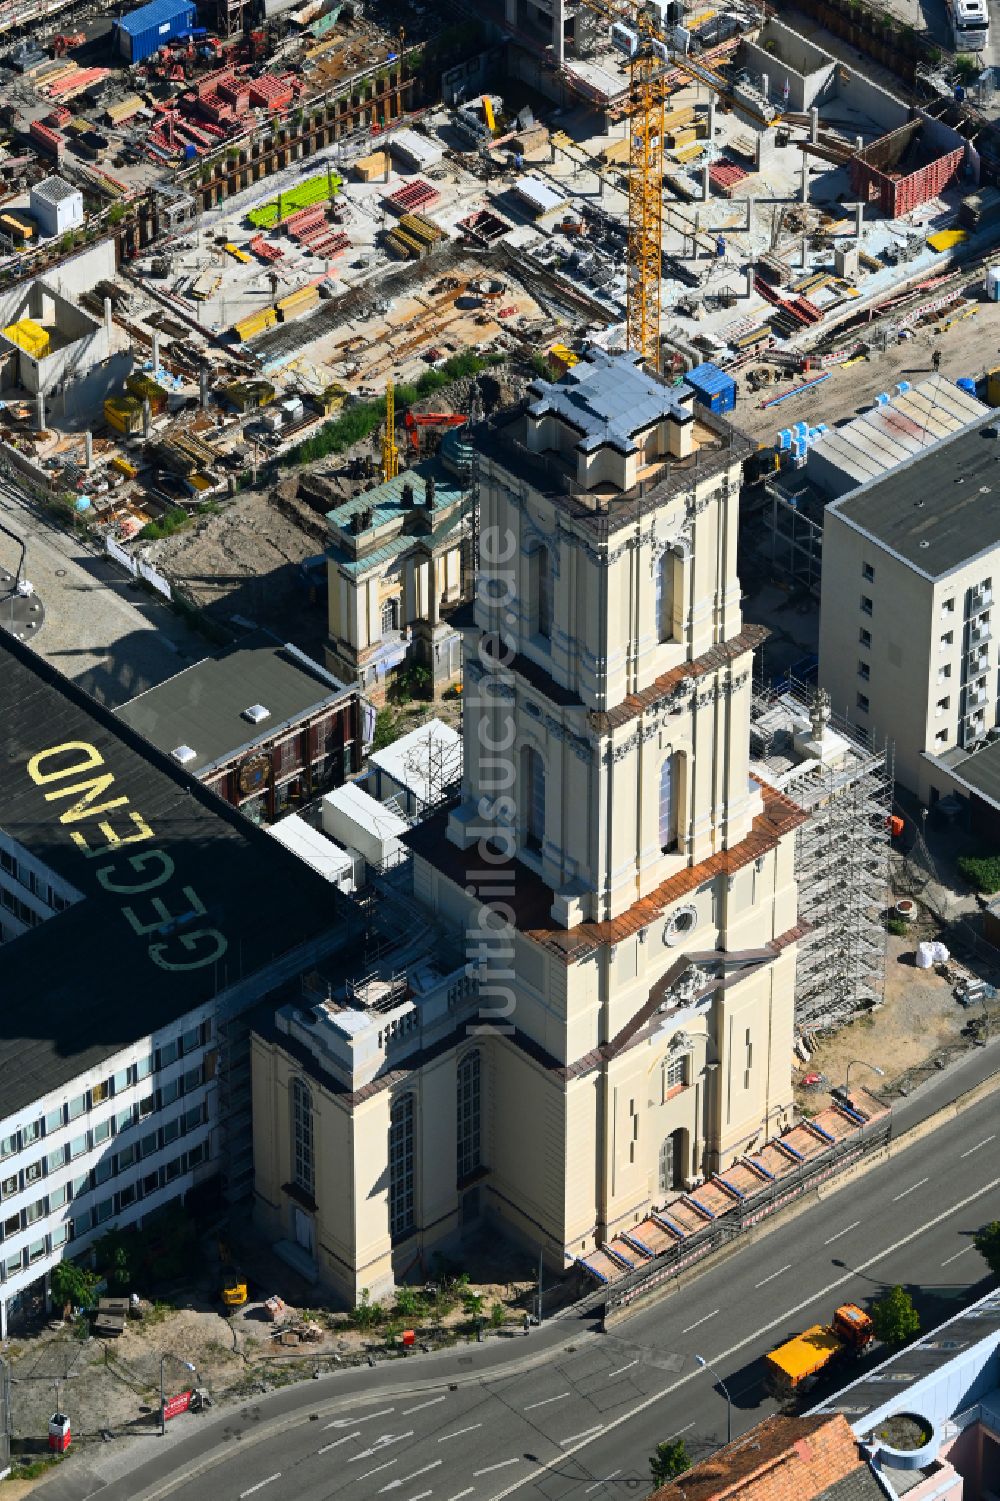 Luftbild Potsdam - Baustelle zum Wiederaufbau der Garnisonkirche Potsdam in Potsdam im Bundesland Brandenburg, Deutschland